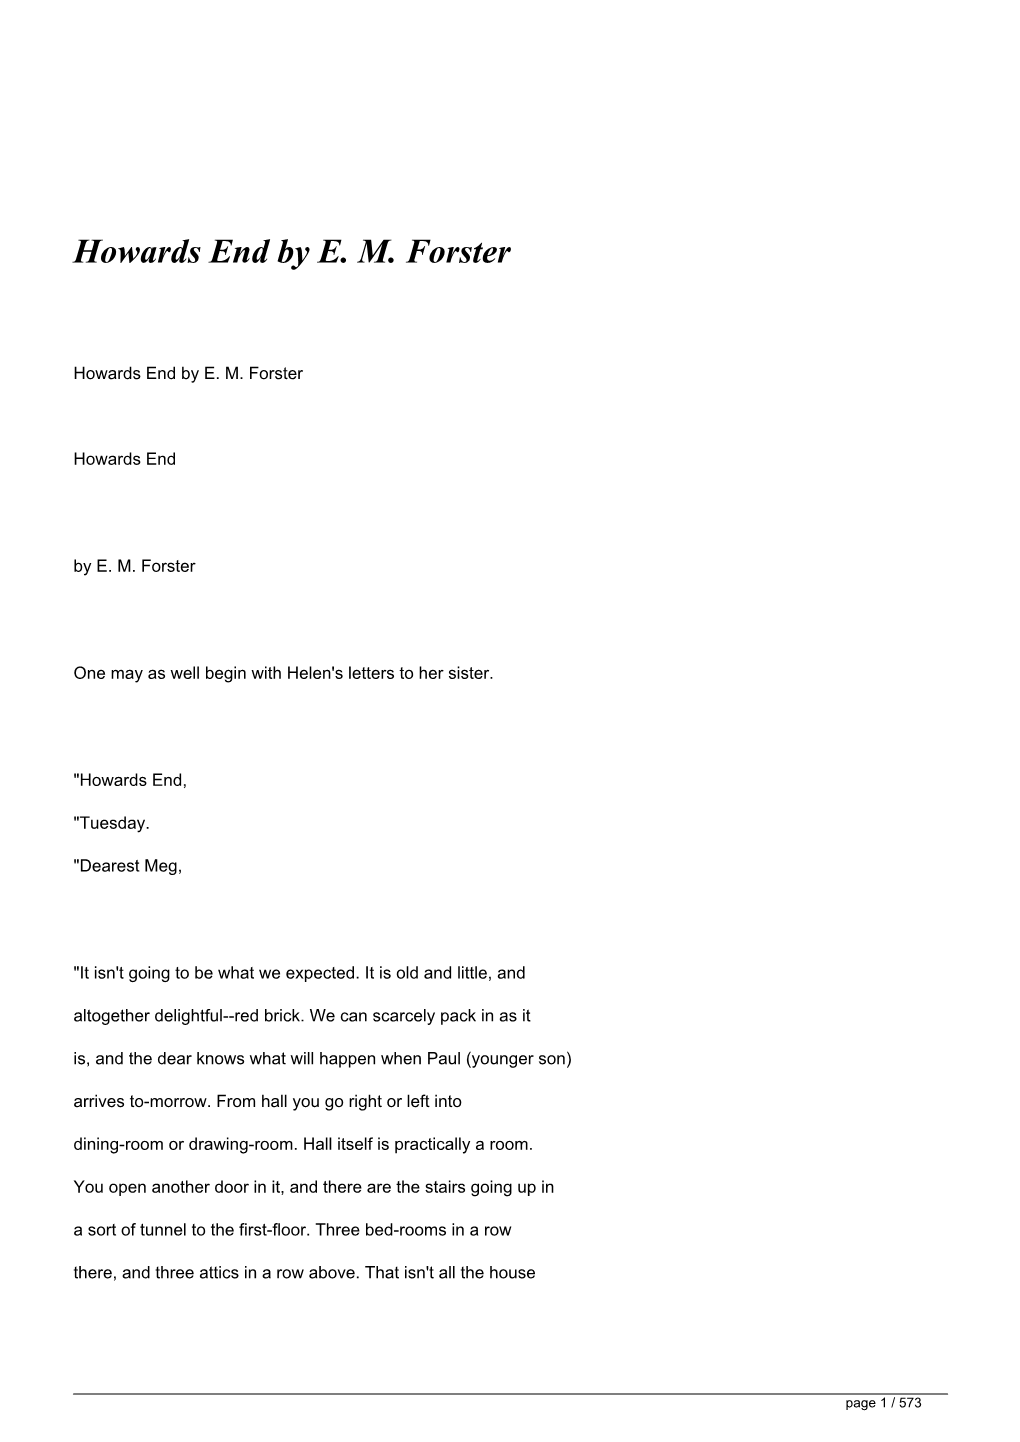 Howards End by EM Forster&lt;/H1&gt;